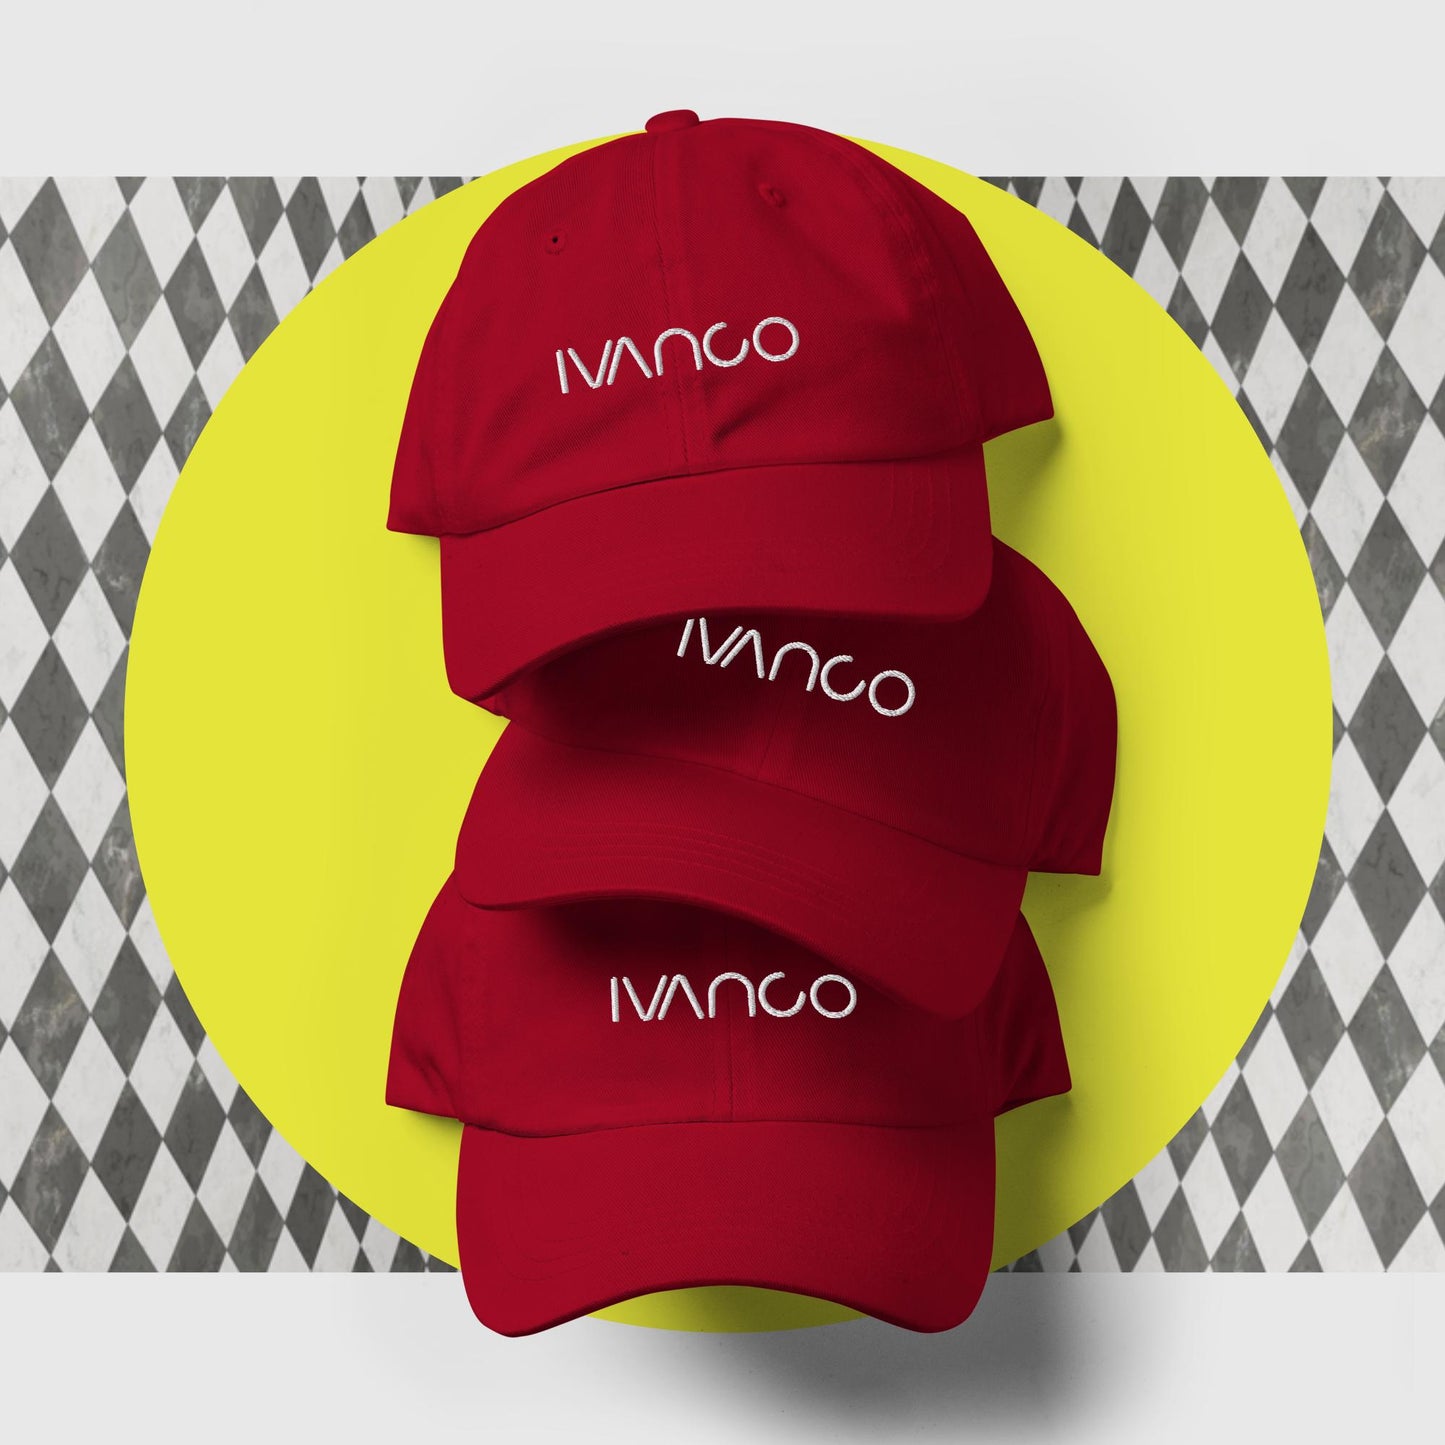 Ivanco Dad Hat w/ White Stitching